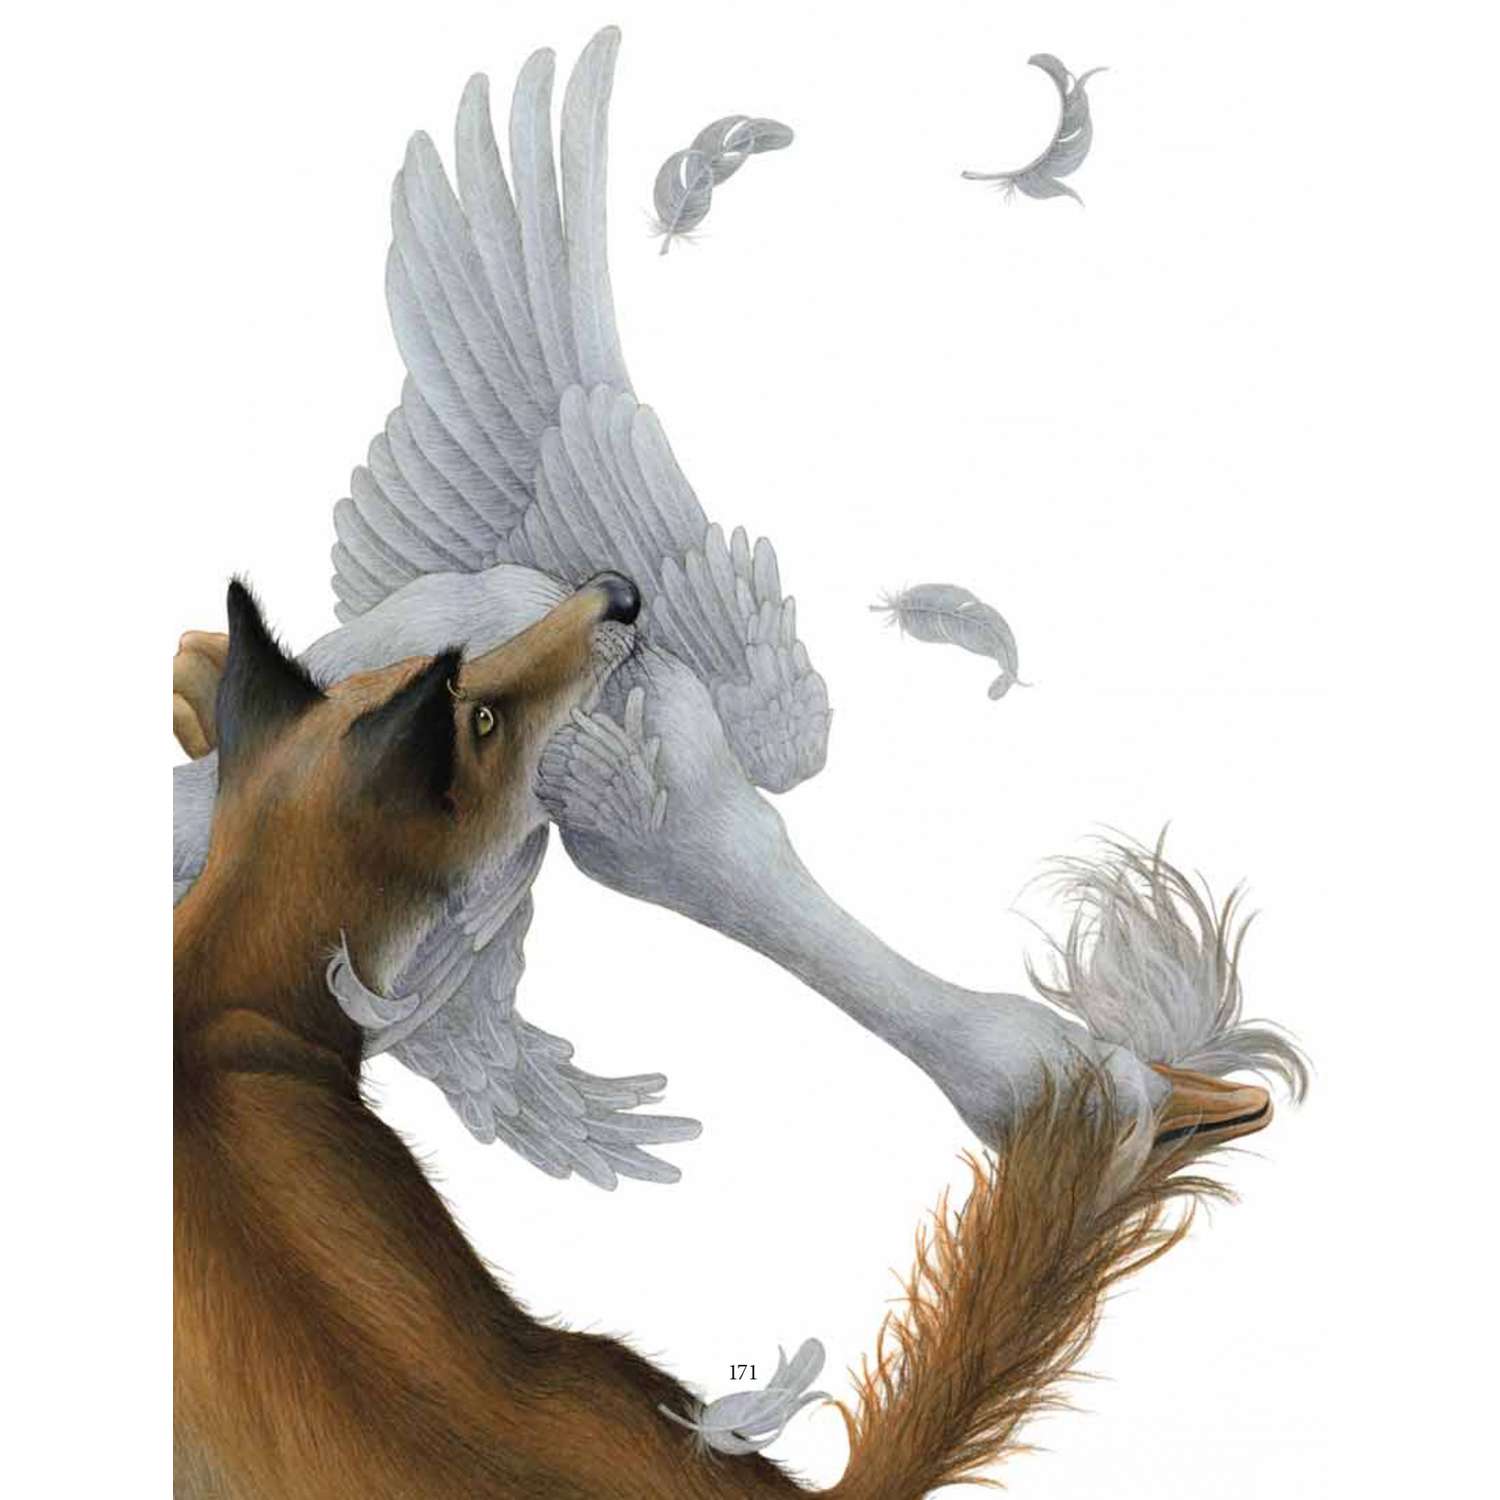 Бреслин Тереза Добрая книга Сказочные существа Шотландии Книга 2 иллюстратор Кейт Липер - фото 22